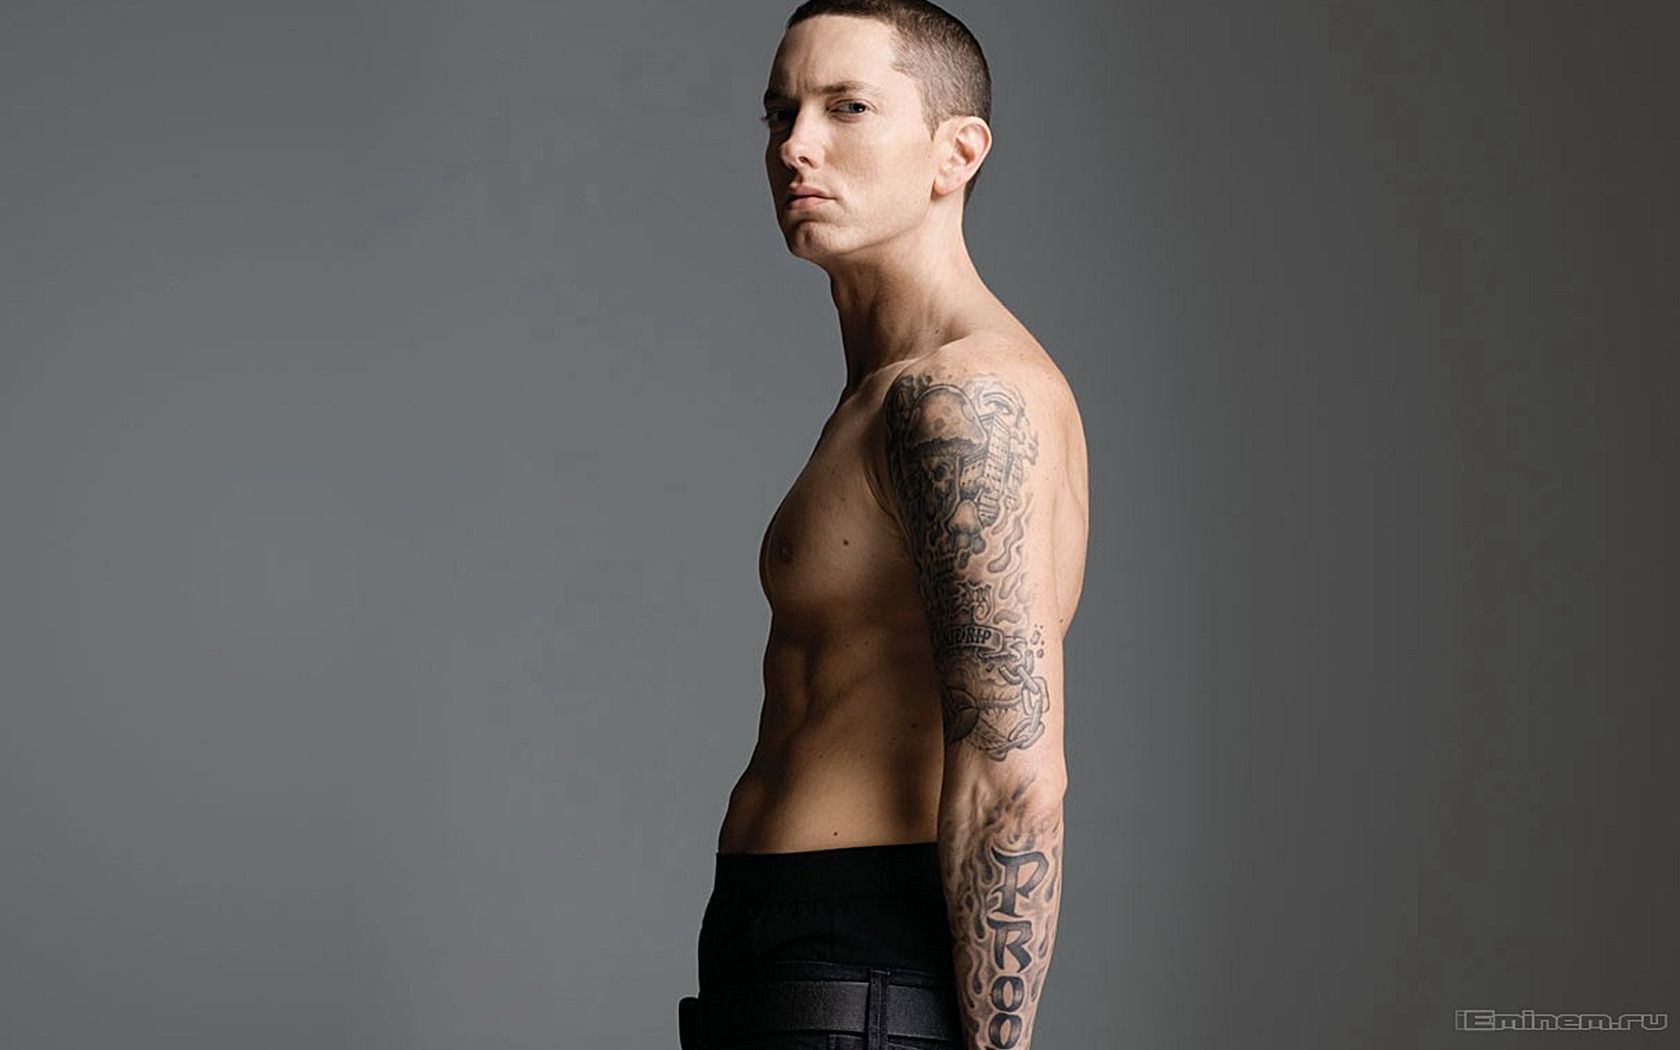 Not Afraid - Eminem Computer Wallpapers, Desktop Backgrounds ...